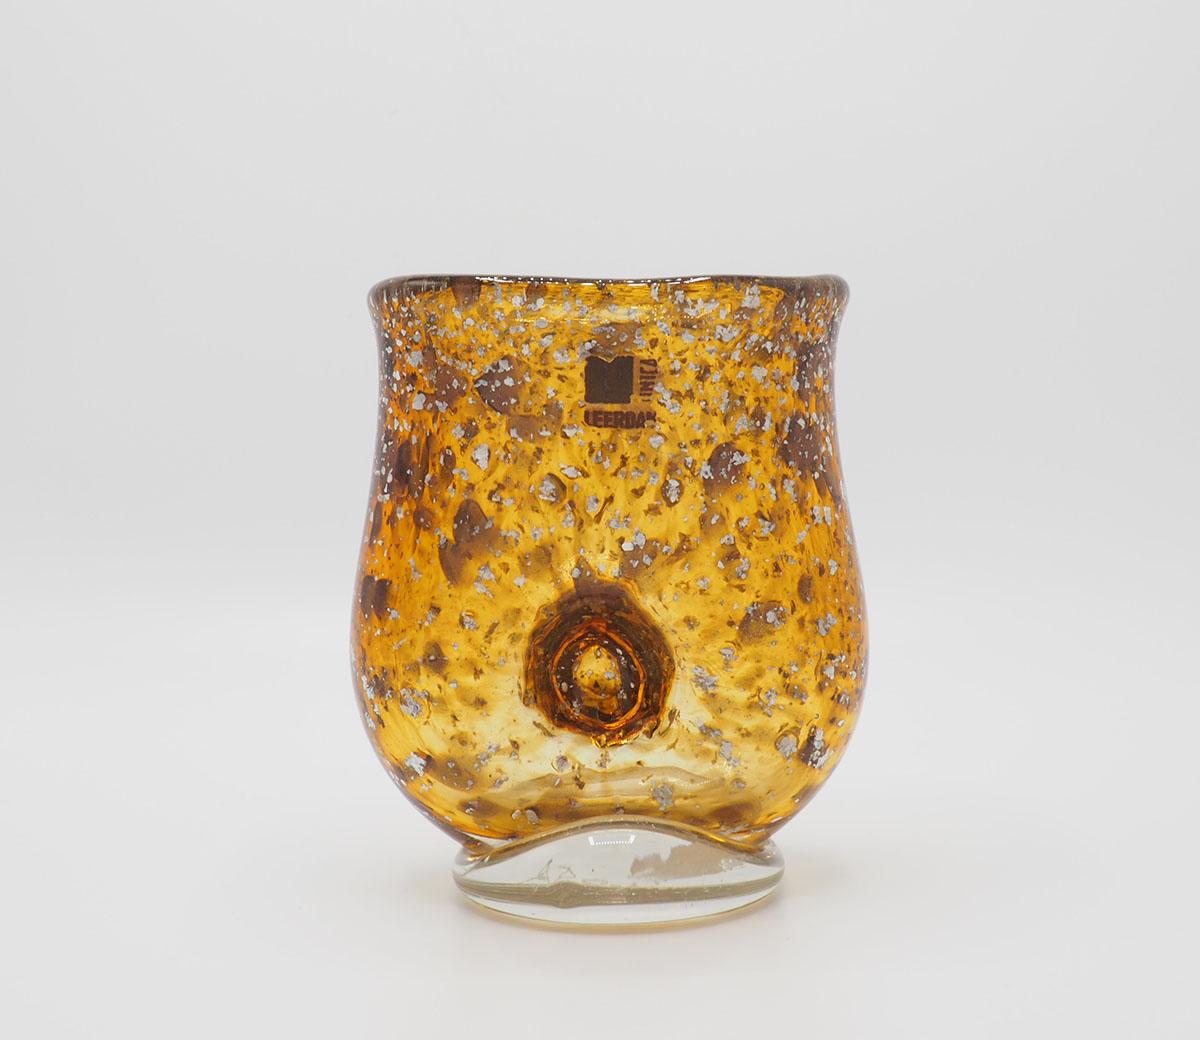 Vase en verre UNICA de l'artiste verrier néerlandais A.D. Copieur pour glasfabriek Leerdam
UNICA M série 167 fabriquée en 1931-1932.
A.D, Copeir est le plus grand artiste verrier que les Pays-Bas aient eu et a vécu de 1901 à 1991.
Ce vase soufflé à